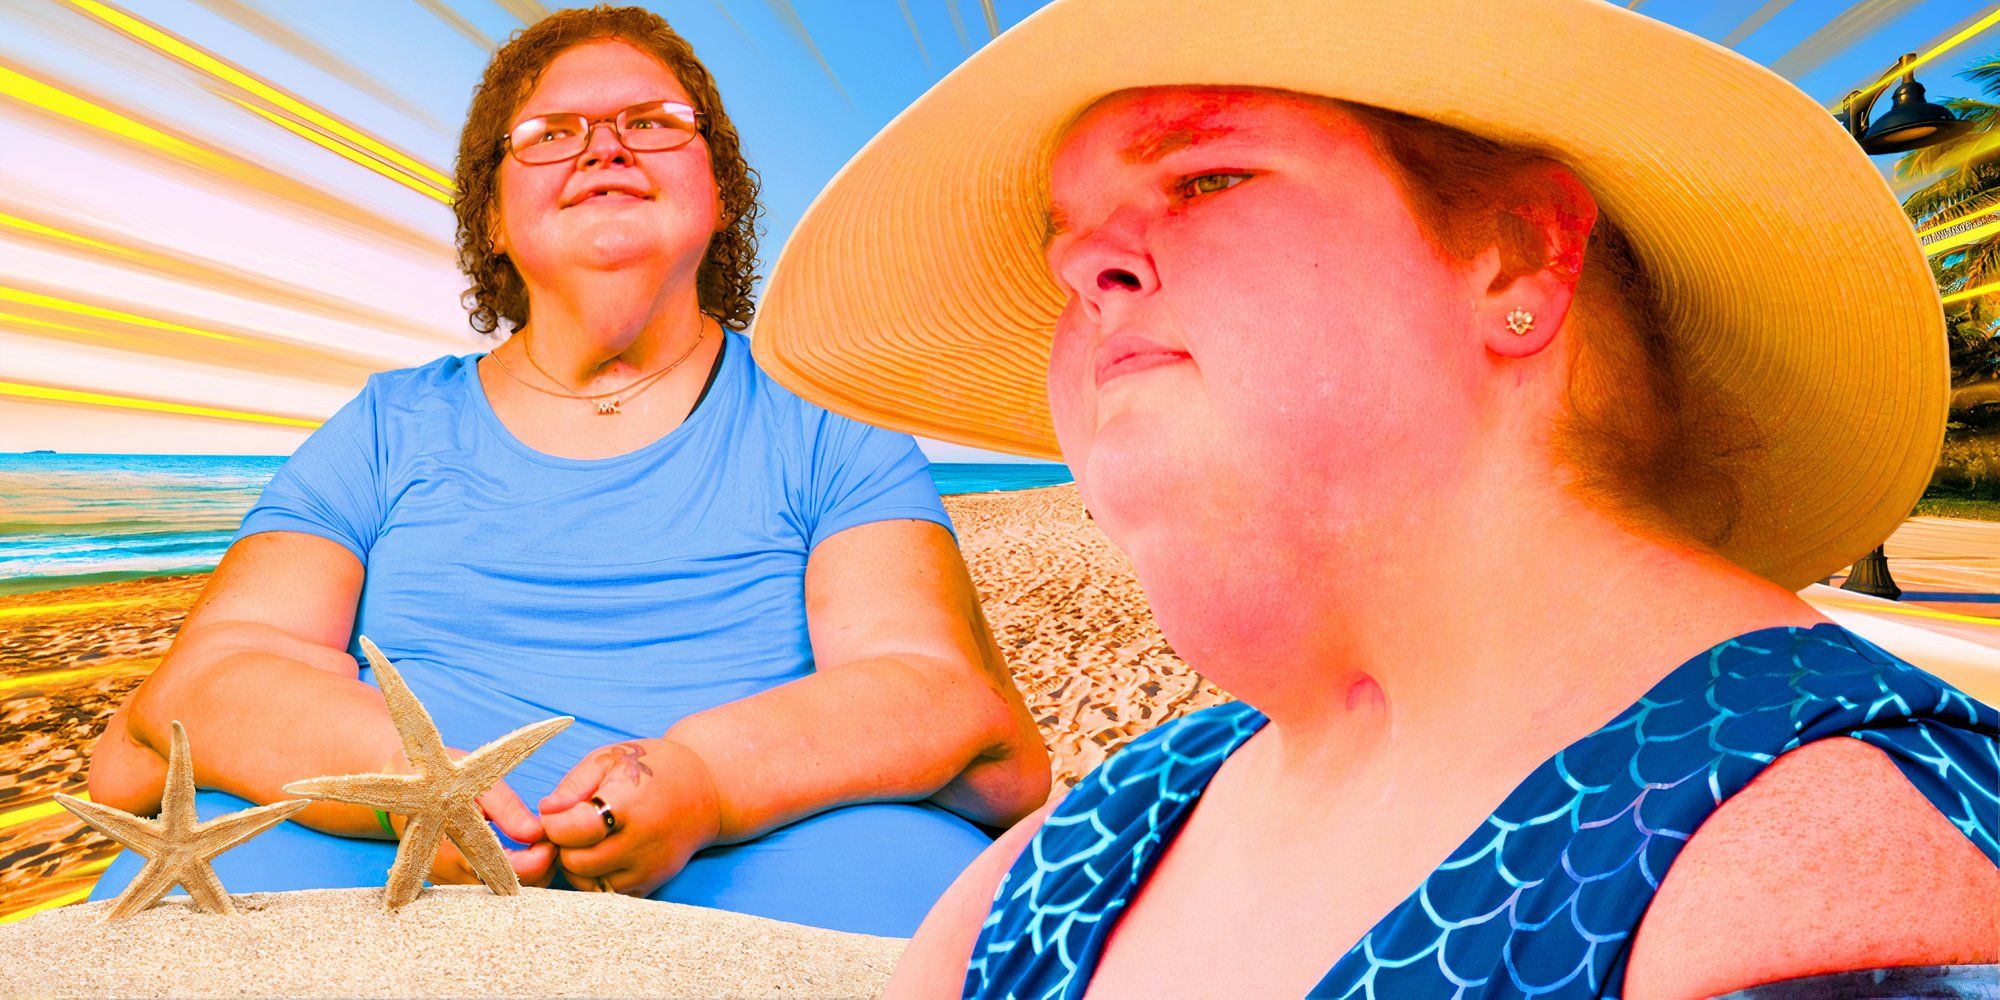 Hermanas de 1000 libras: “¡Terciopelo azul!”: Más atuendos azules de ensueño de Tammy después de un hito extraordinario en su pérdida de peso